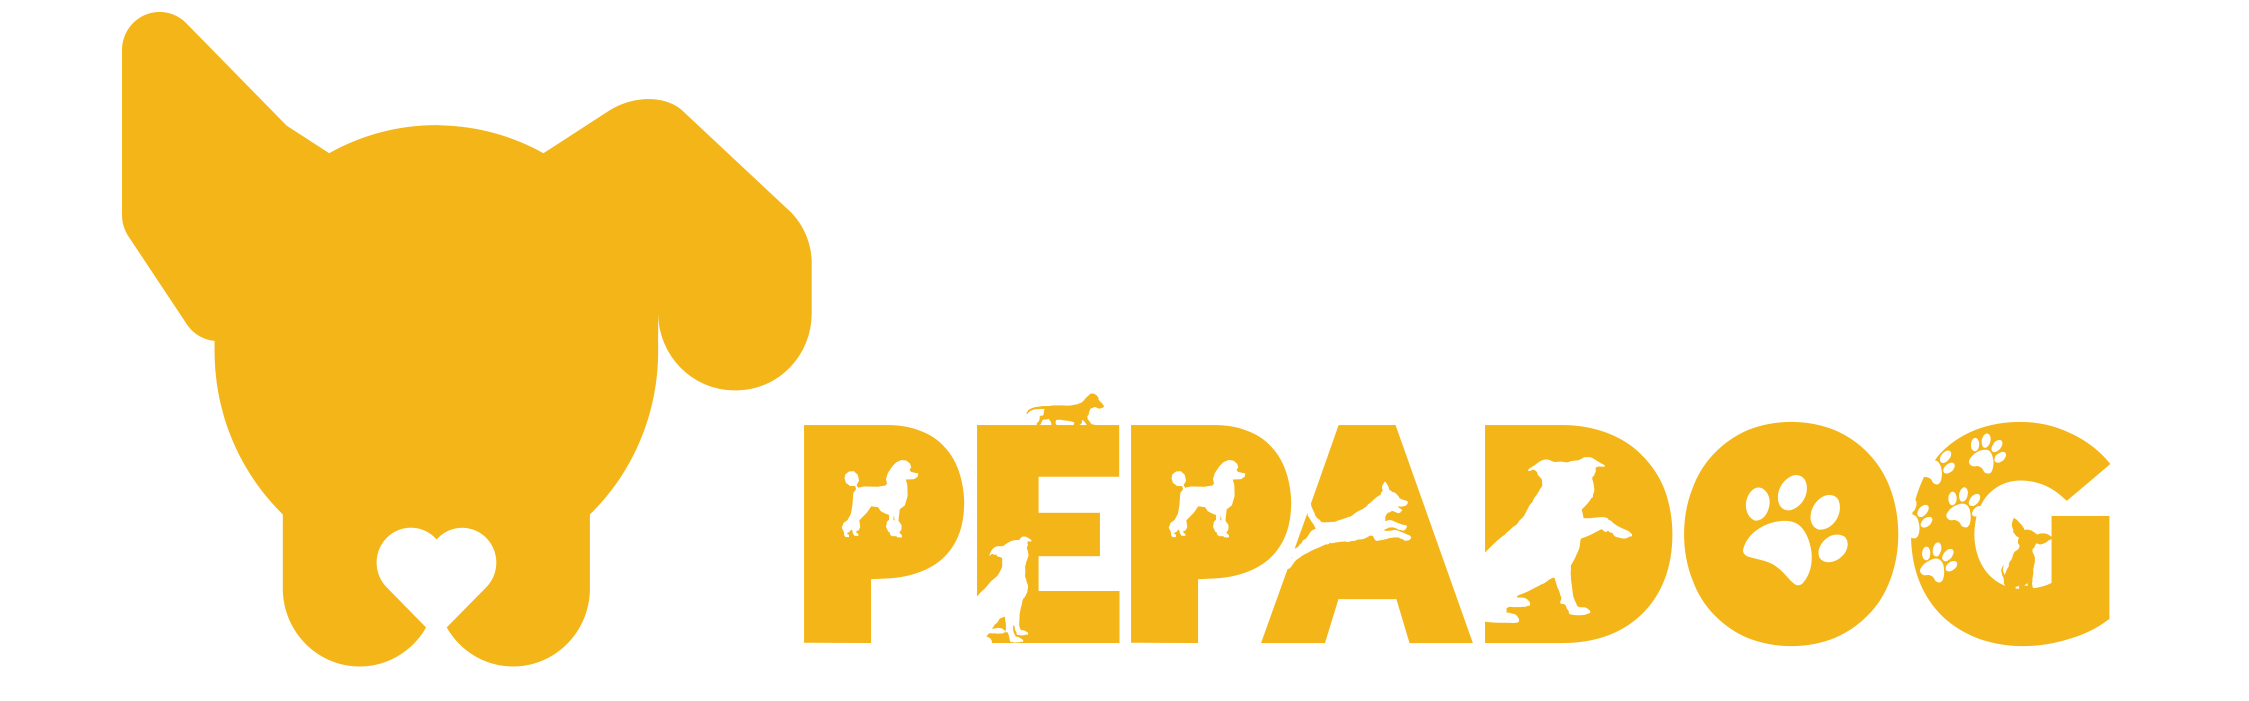 logo_pepadog_png